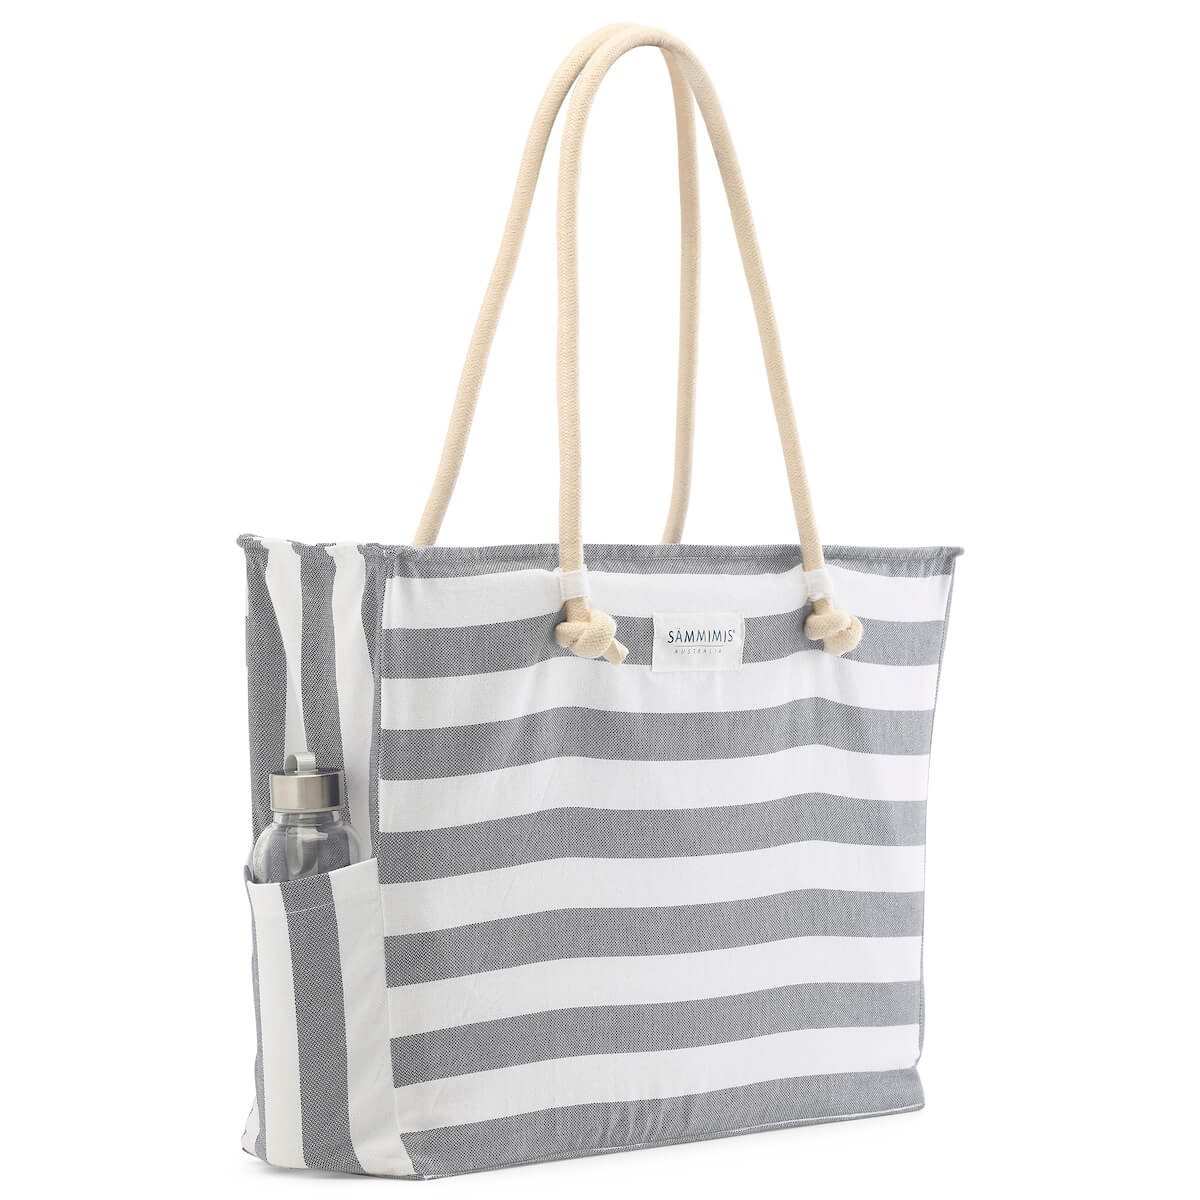 BONIFACIO Jumbo Beach Bag: Charcoal/White